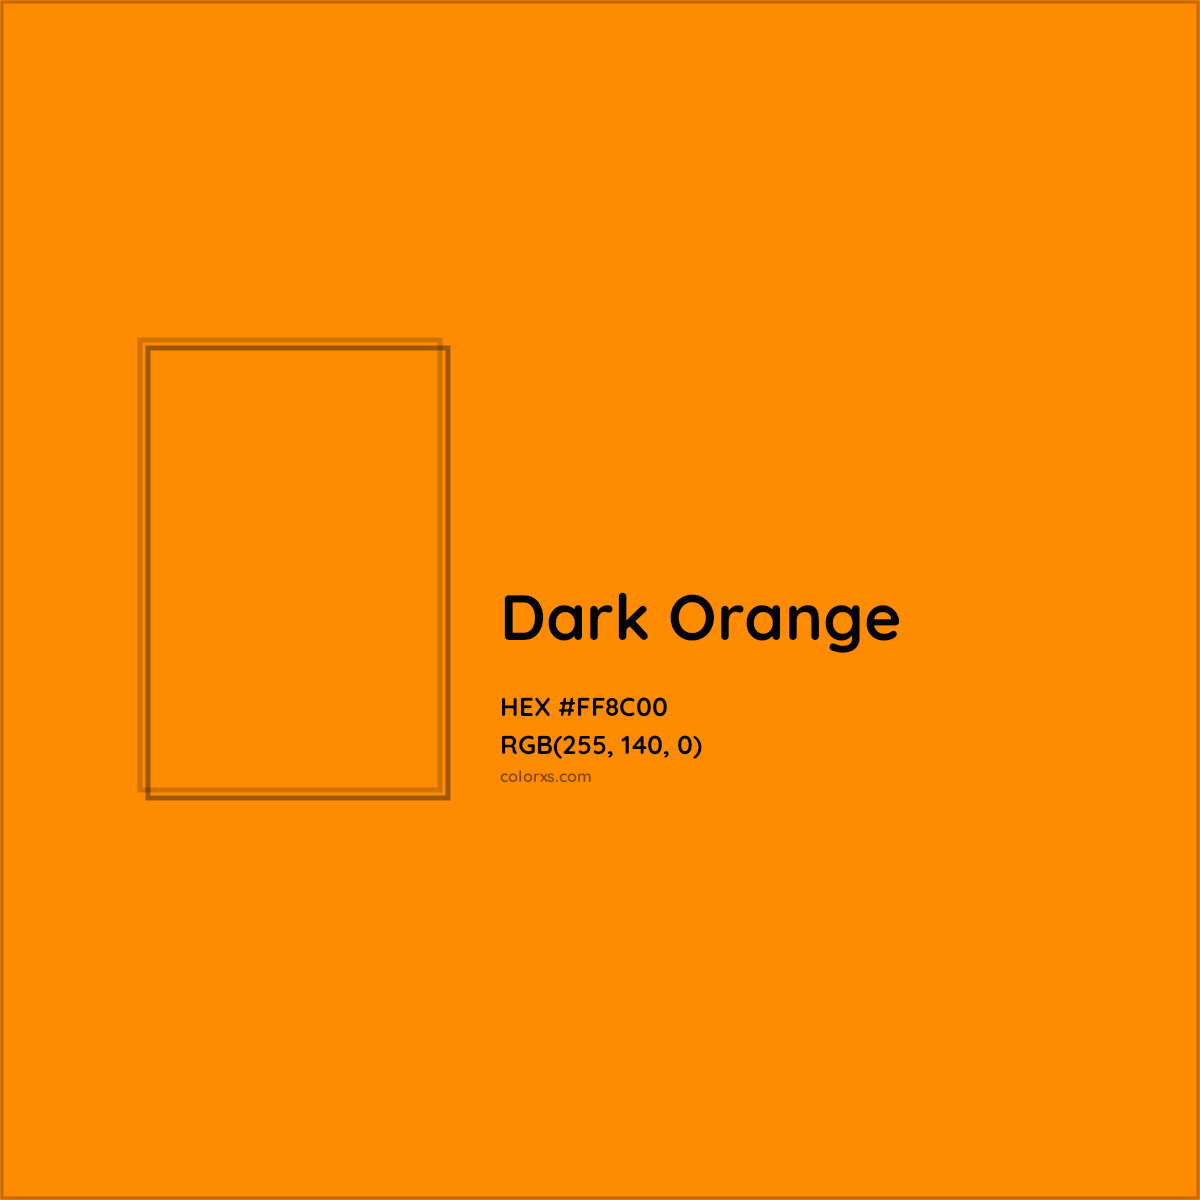 HEX #FF8C00 Dark Orange Color - Color Code